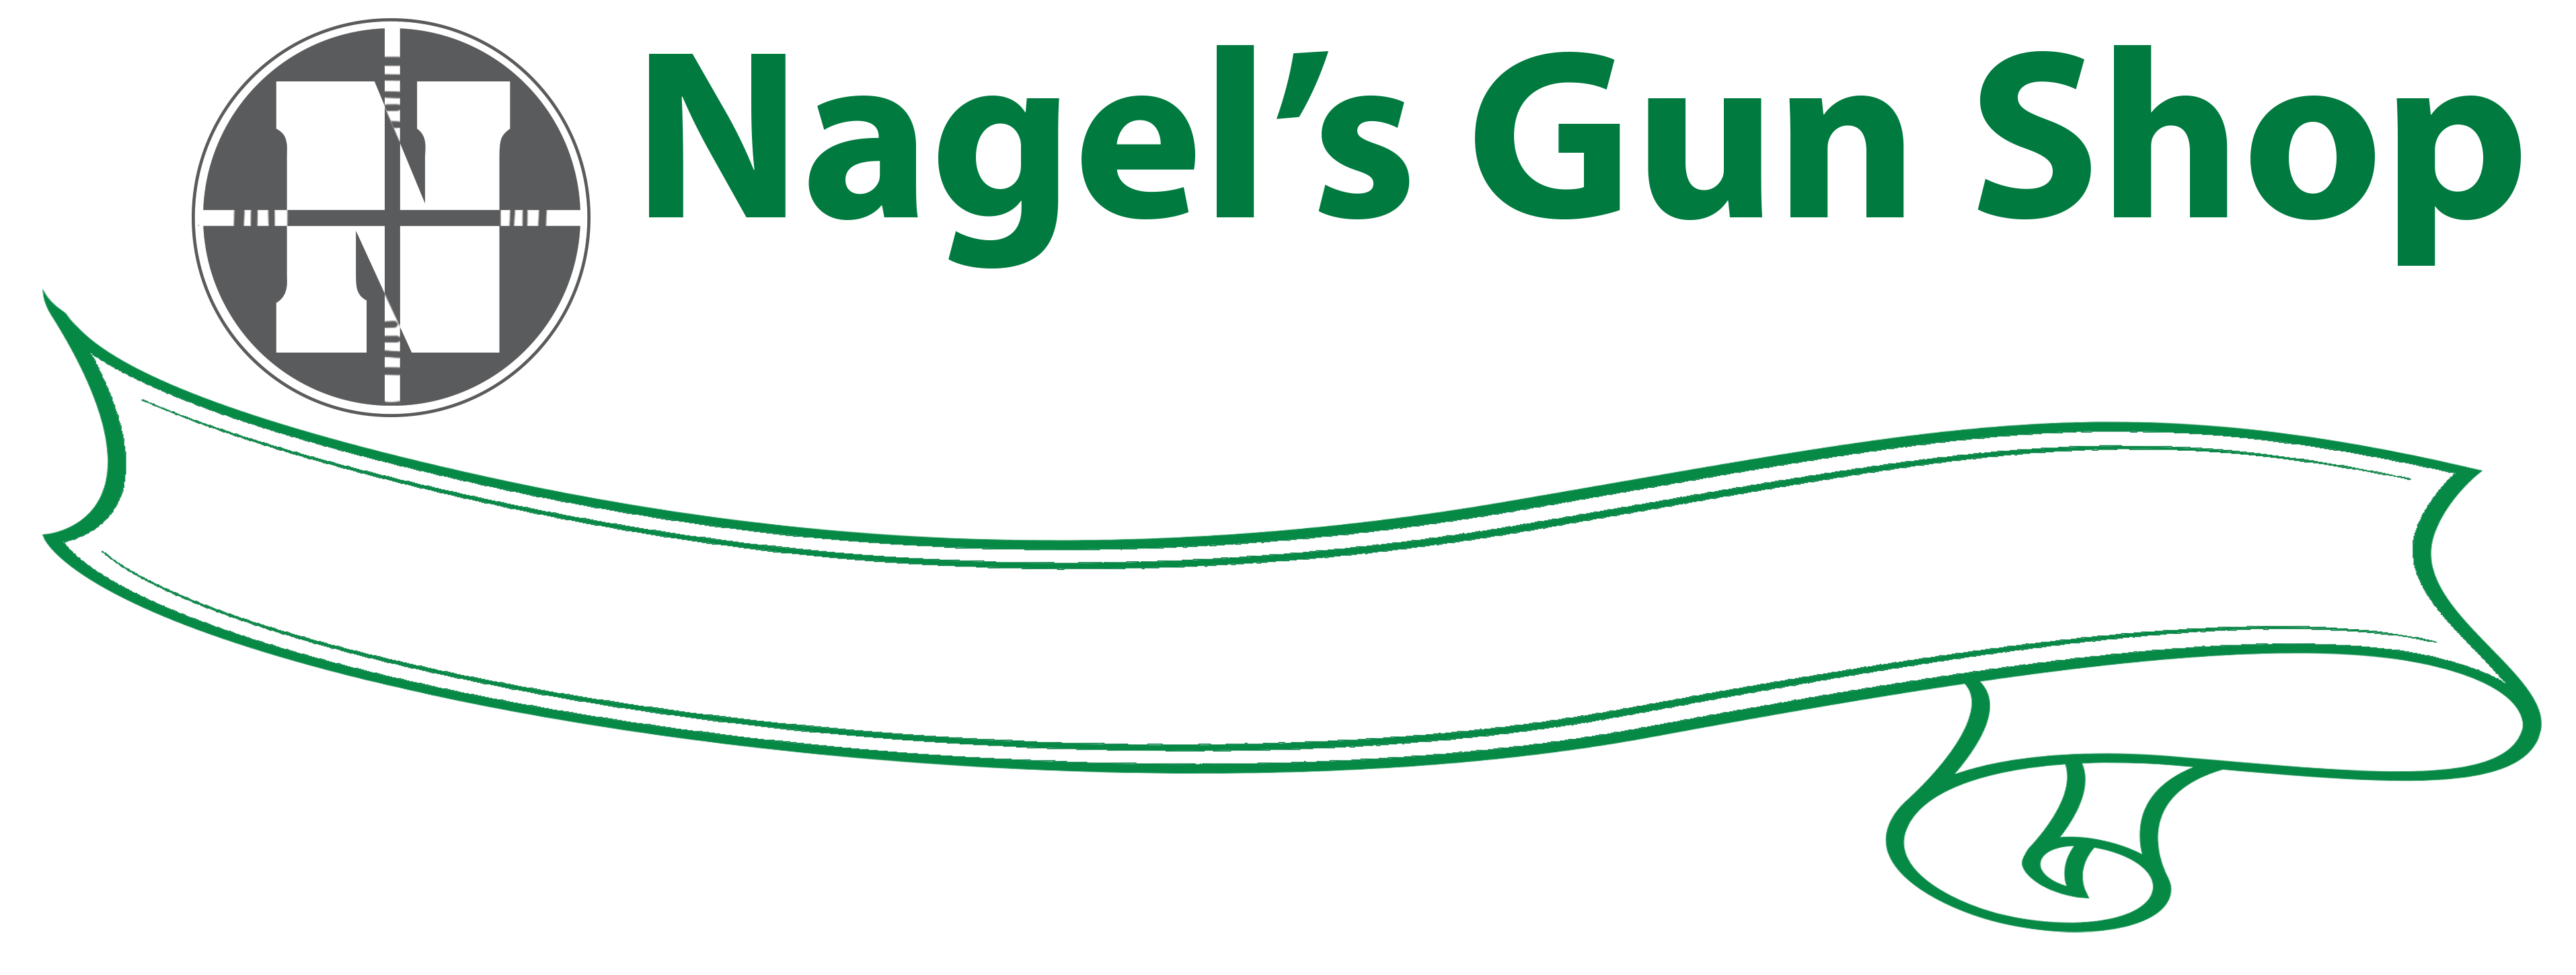 IWI Archives - Nagel's Gun Shop | Since 1942